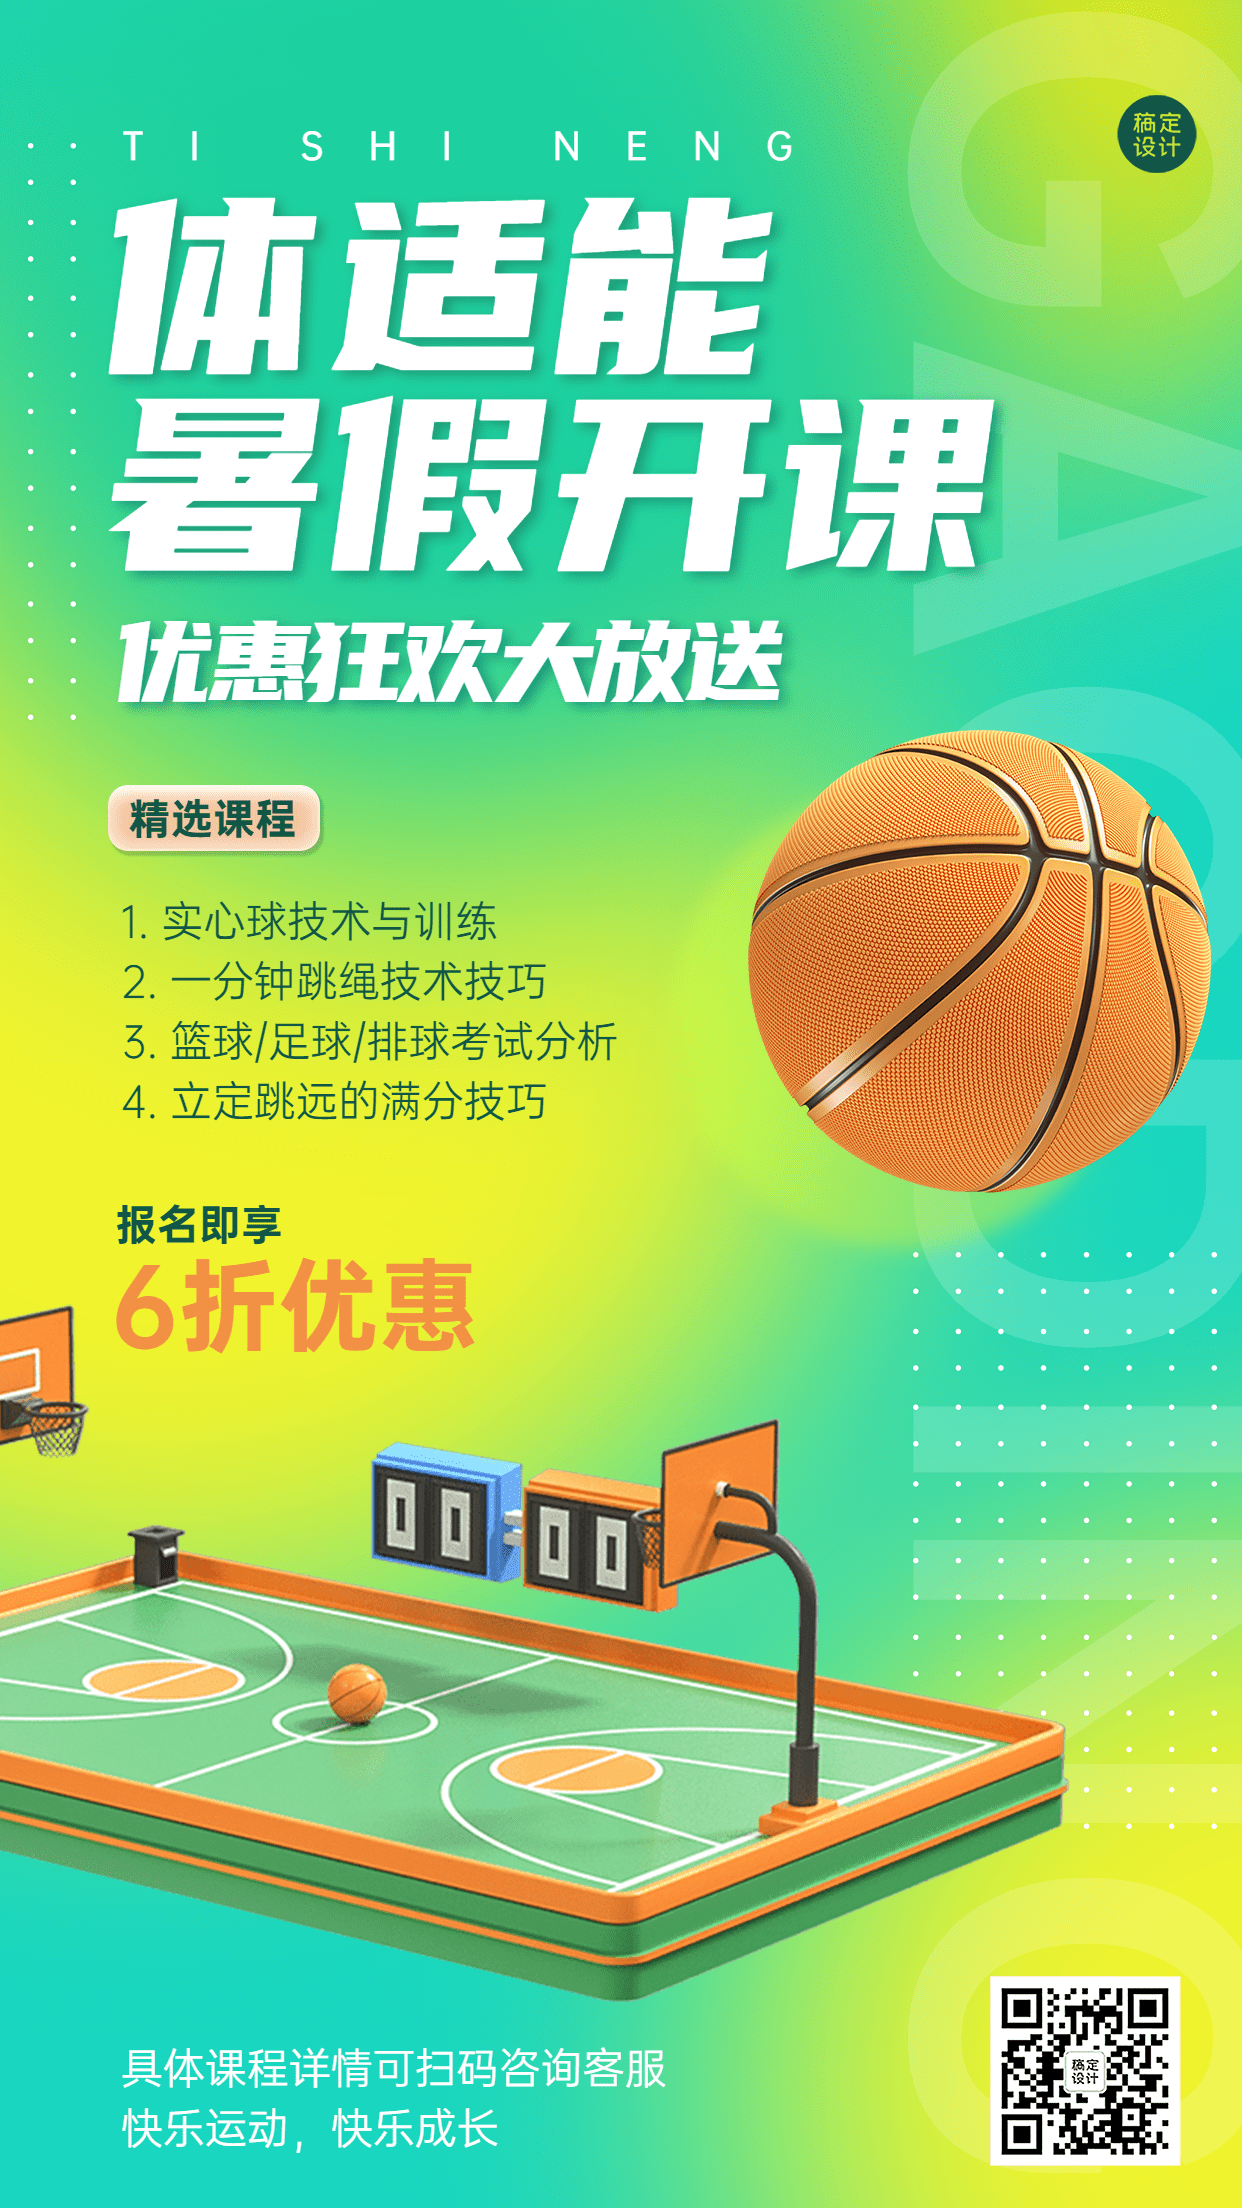 夏季招生体适能篮球课招生宣传海报预览效果